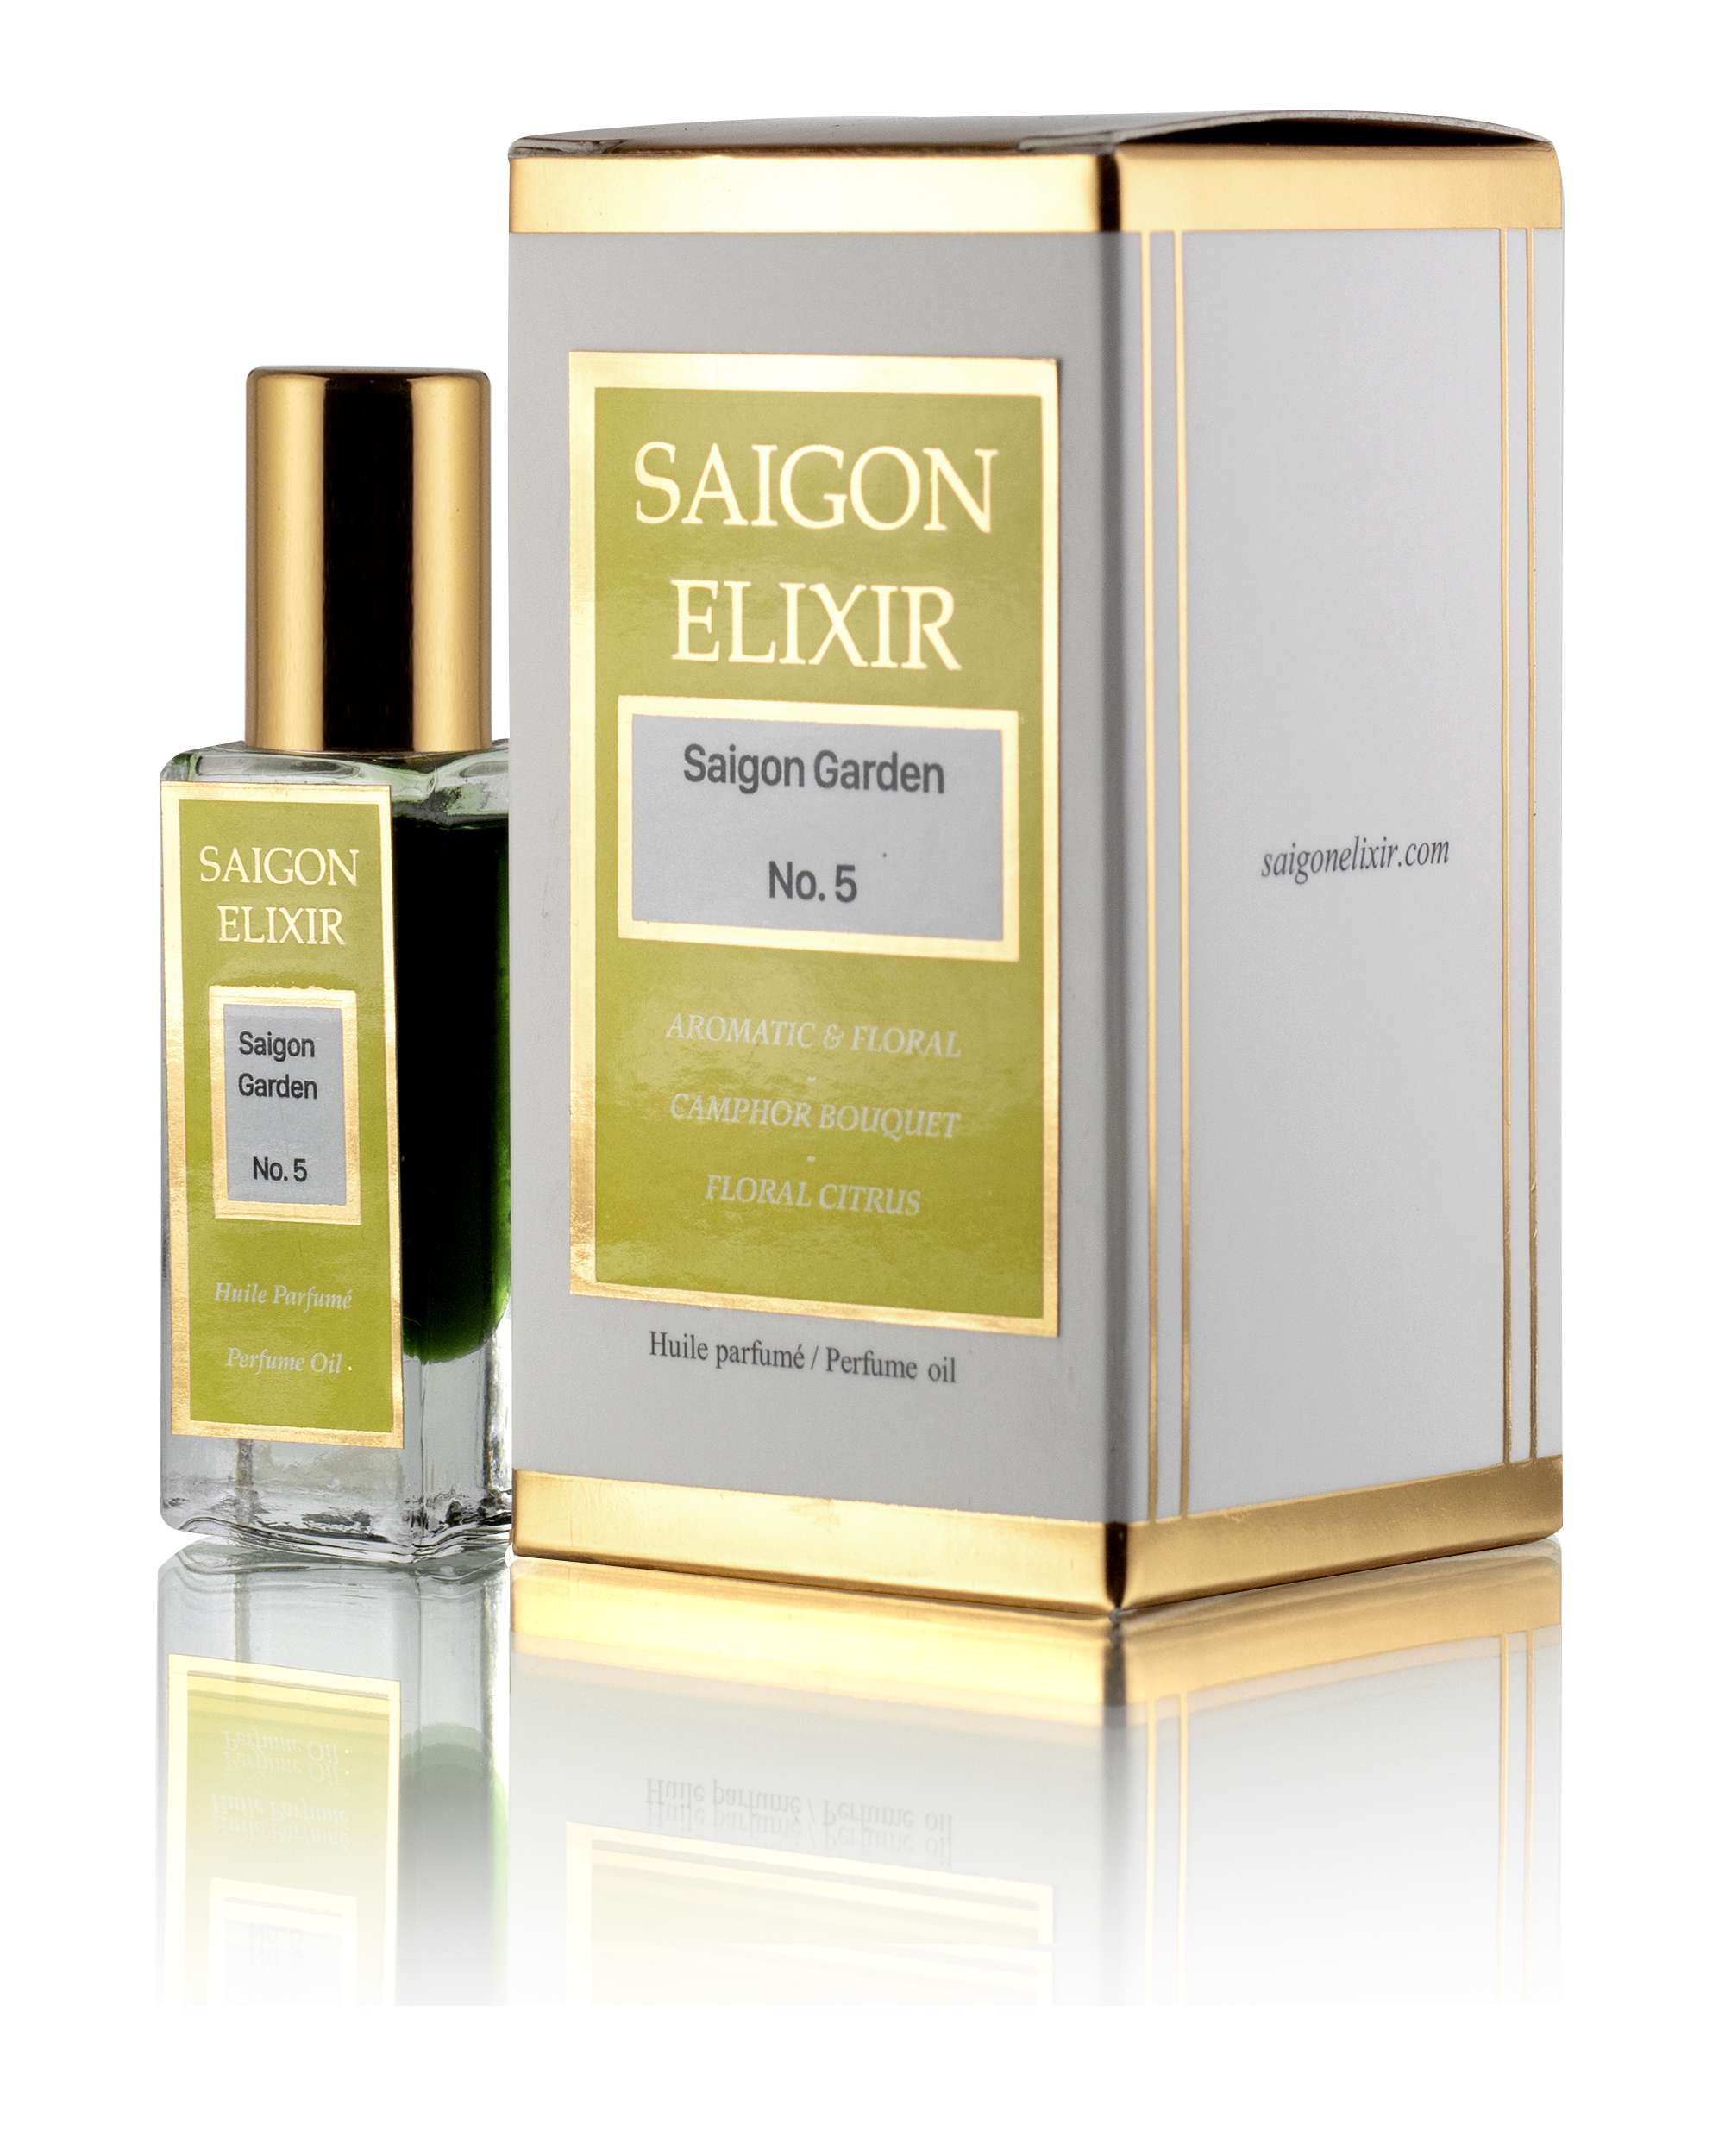 Saigon Garden – Saigon Elixir